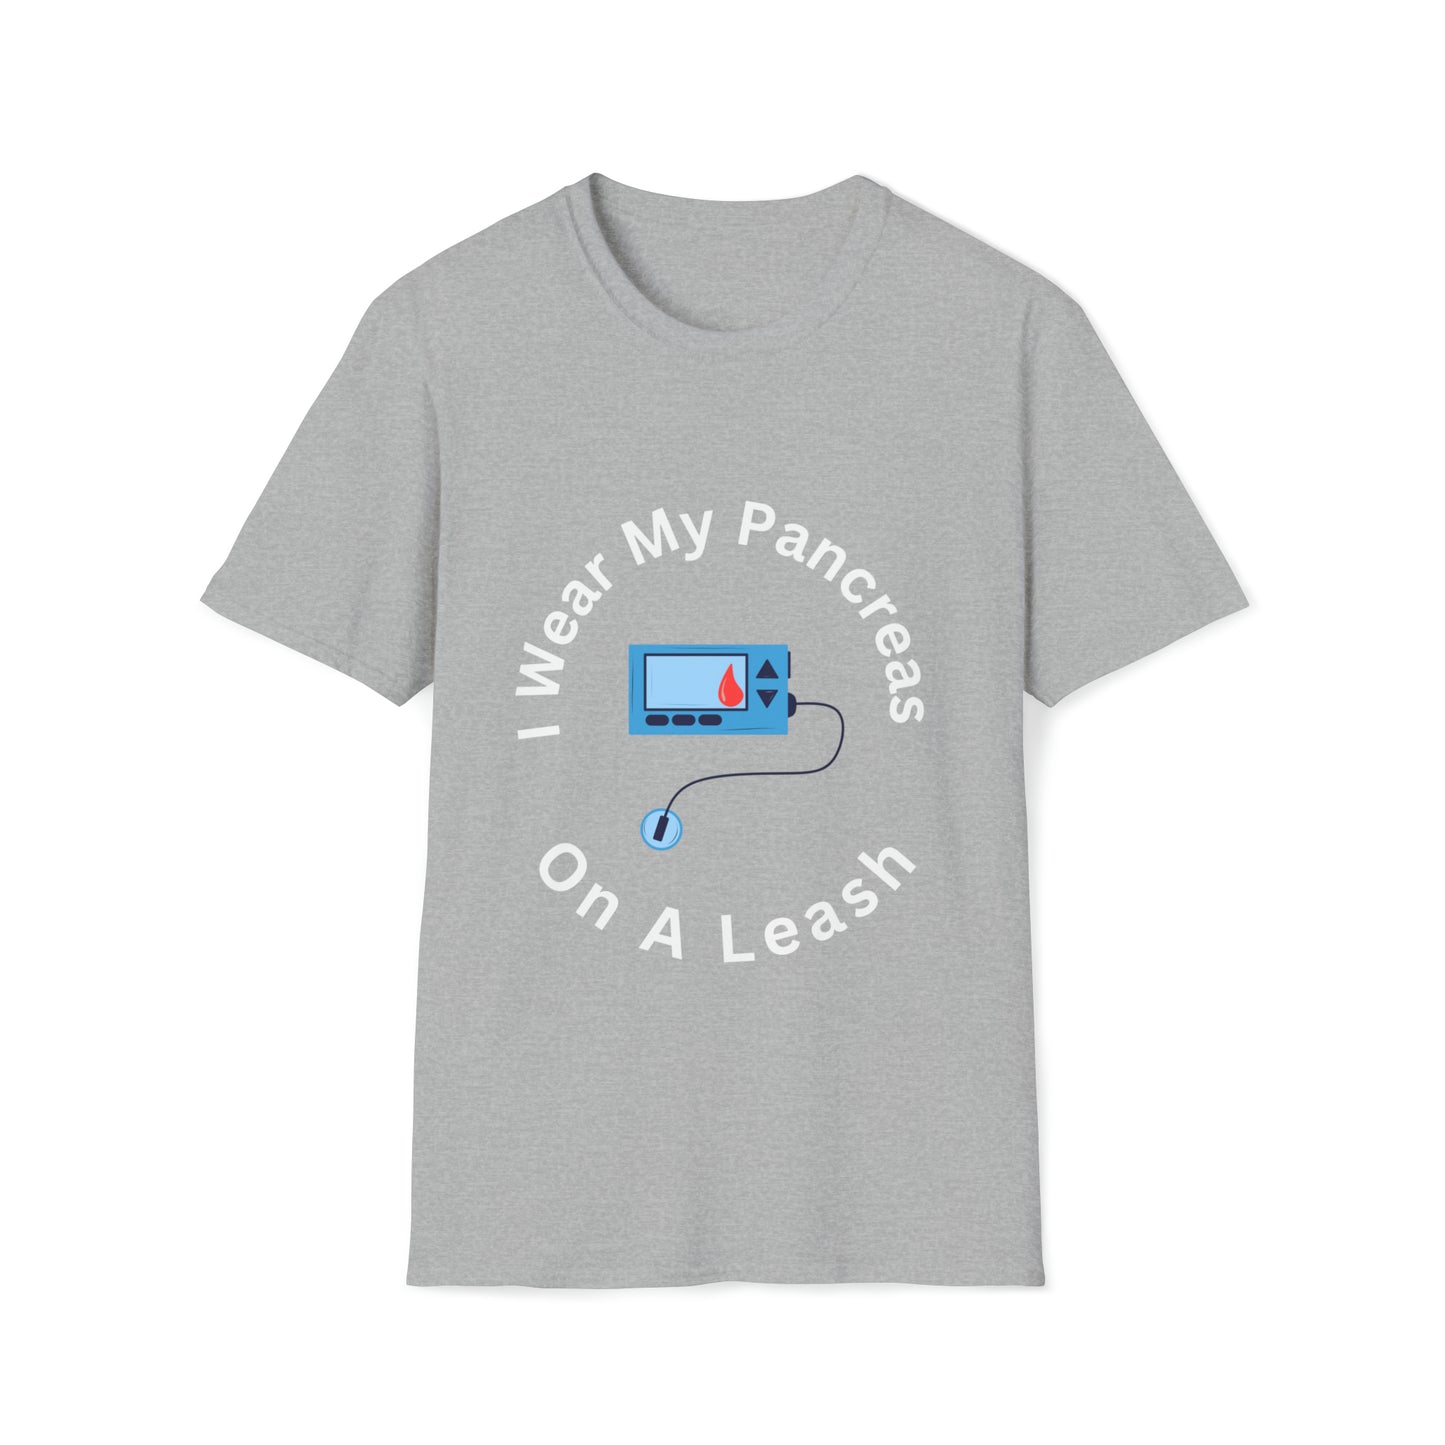 Pancreas on Leash Unisex Softstyle T-Shirt